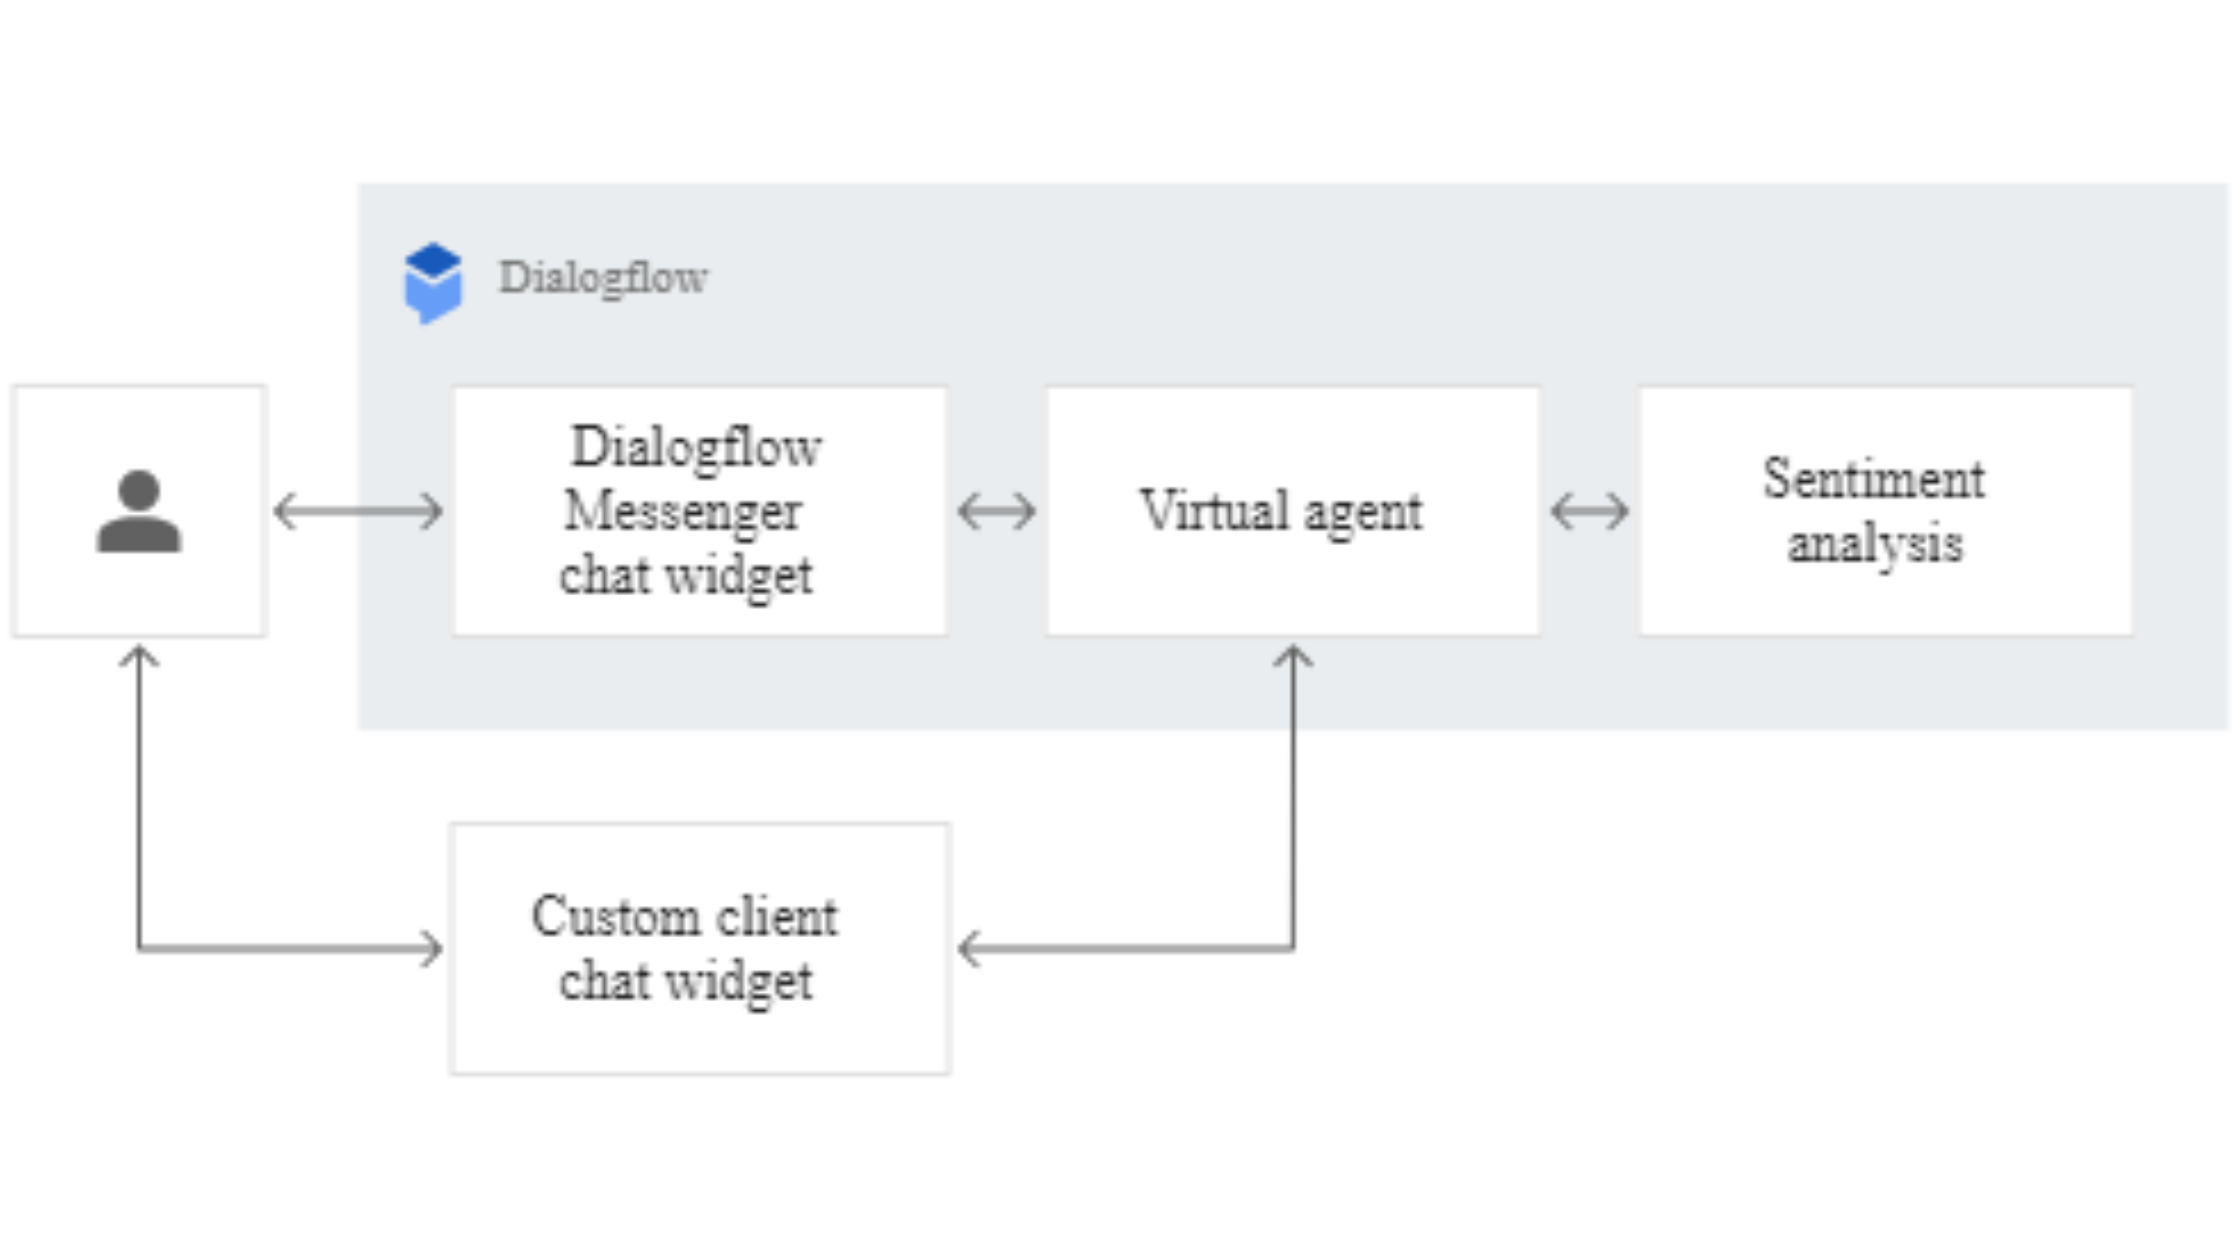 Dialogflow